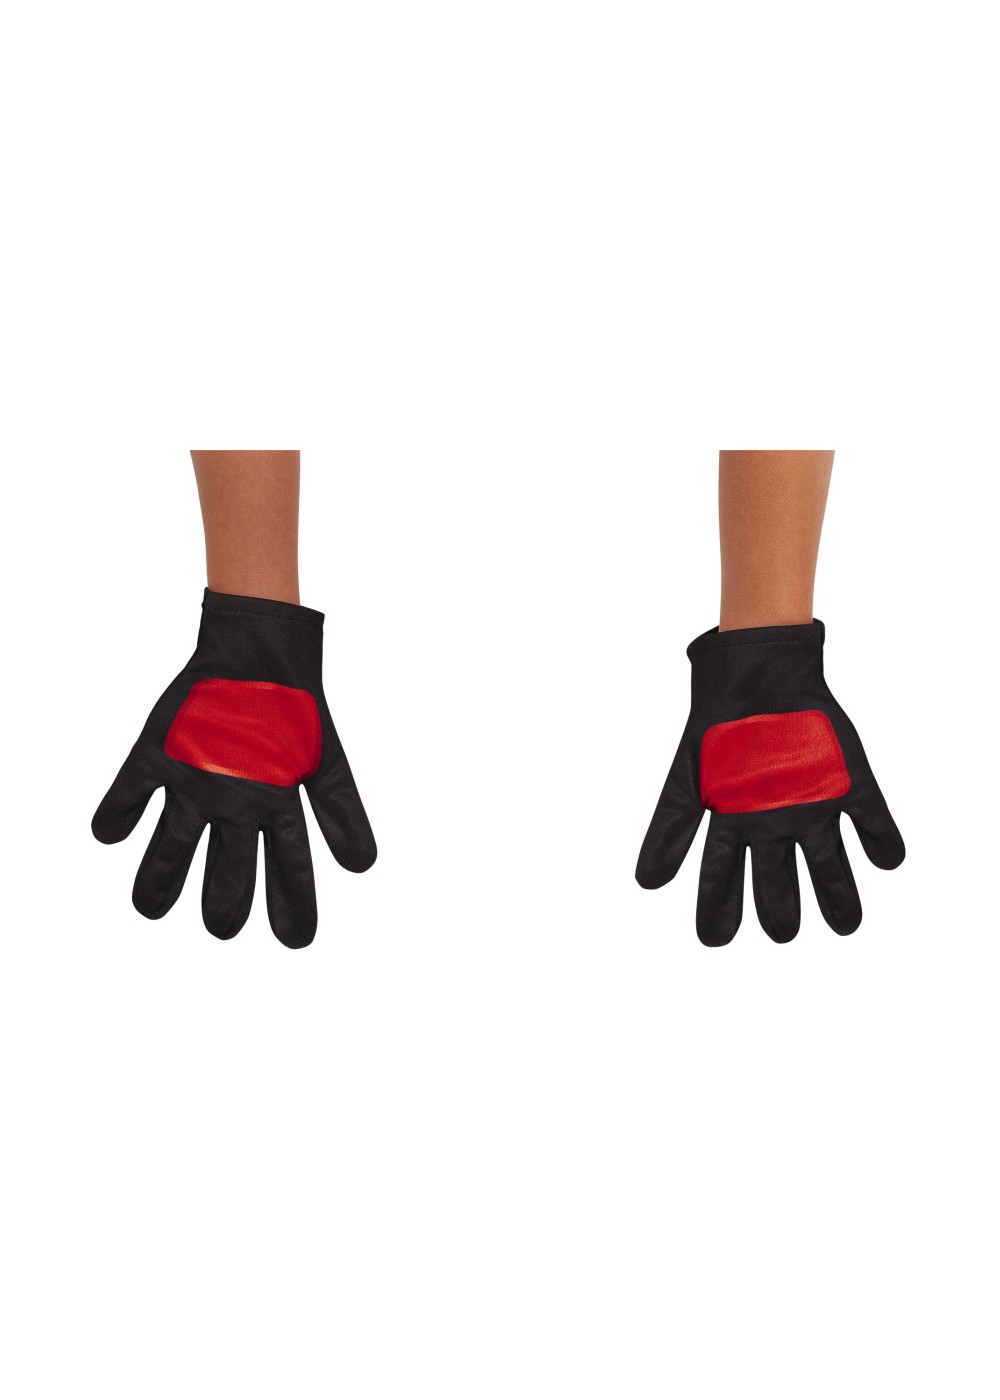 Power Rangers Red Toddler Boys Gloves